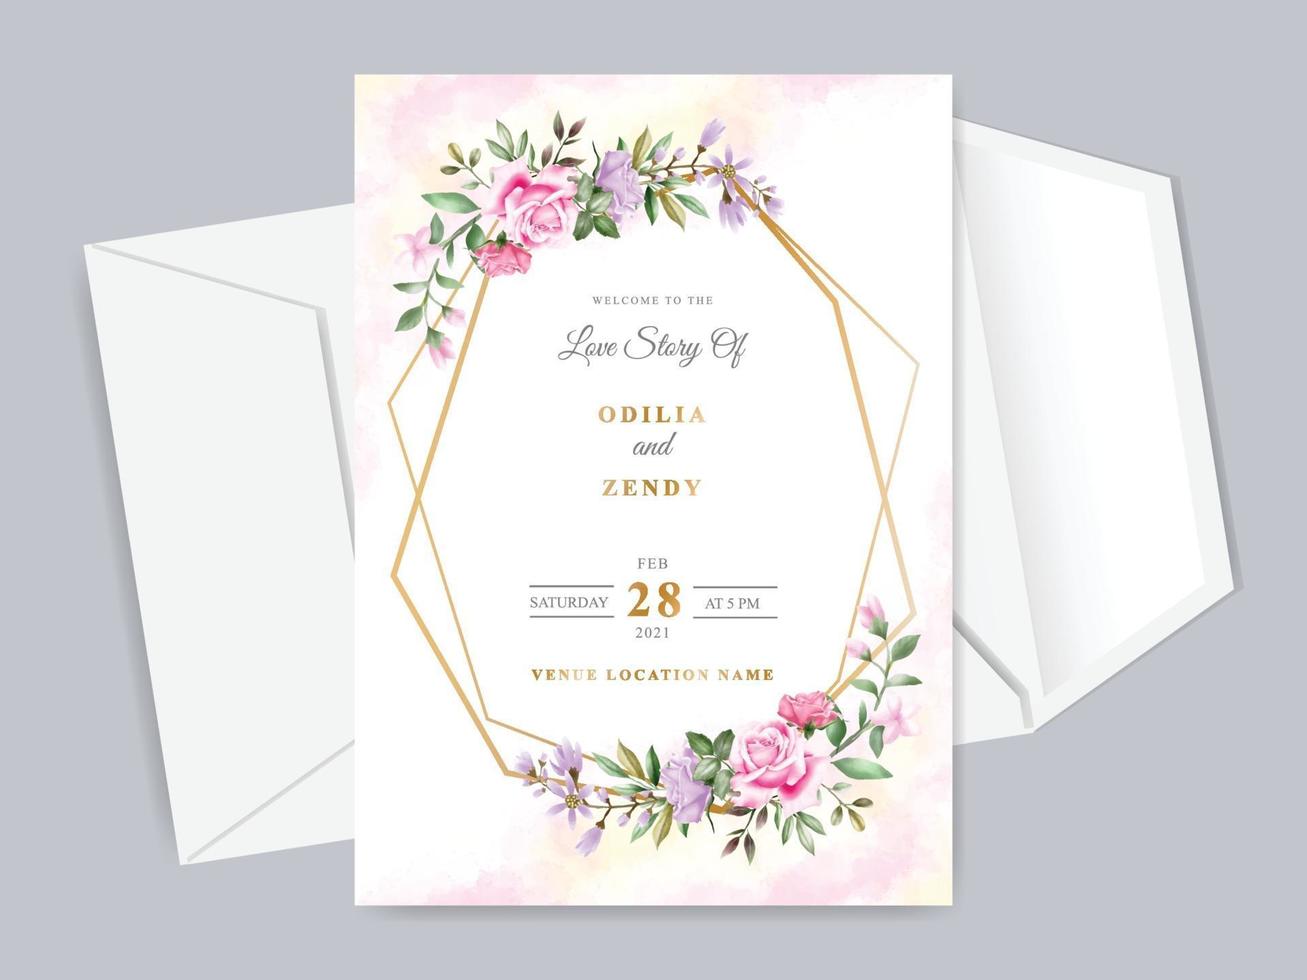 hermosa plantilla de tarjeta de invitación de boda floral dibujada a mano vector